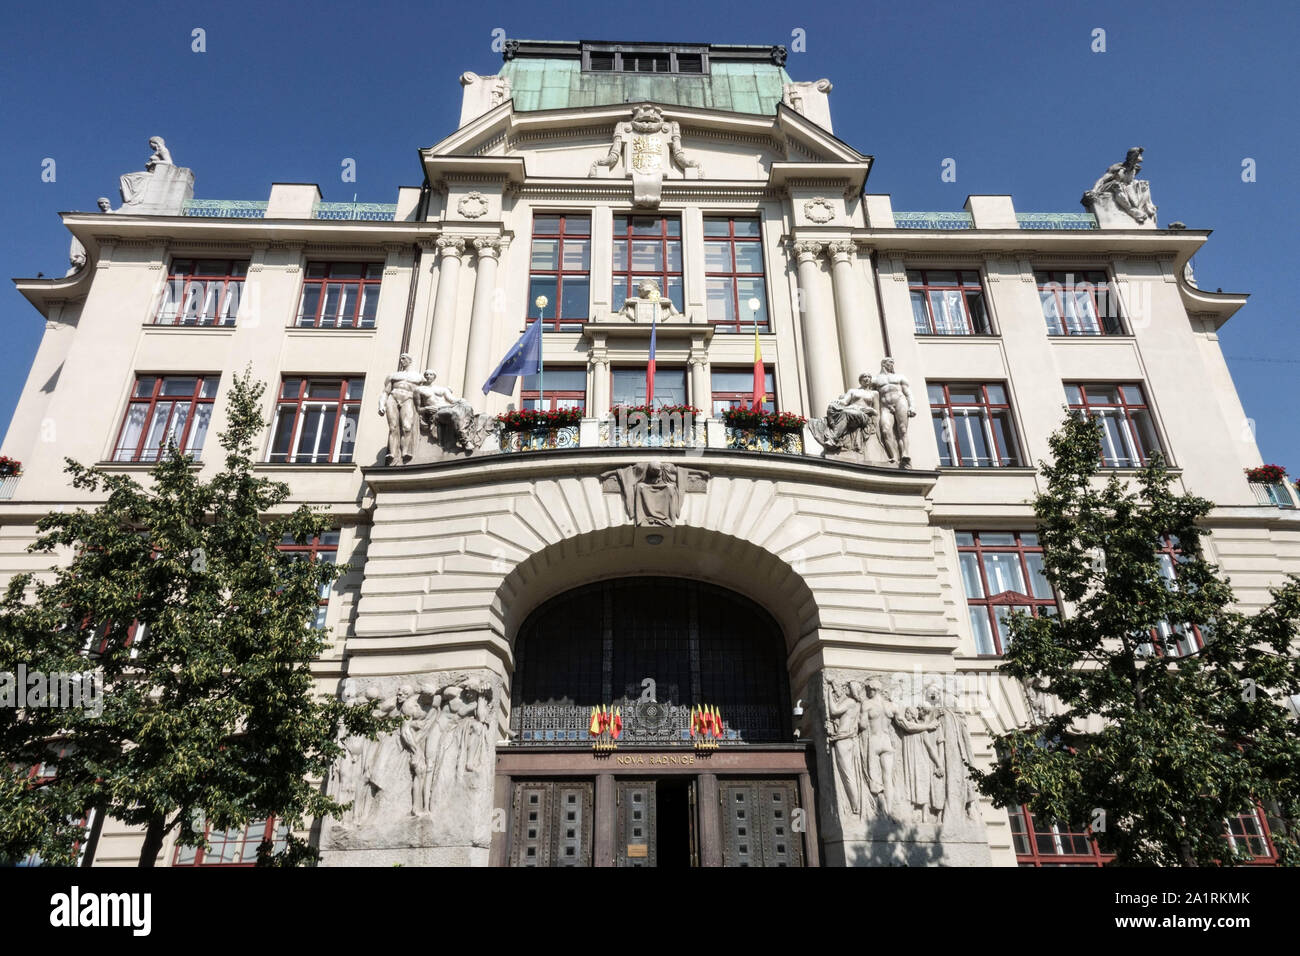 Prague, République tchèque. Hôtel de Ville / Nova radnice (1912) dans la place Namesti Marianske. Bâtiment de style Art Nouveau Banque D'Images